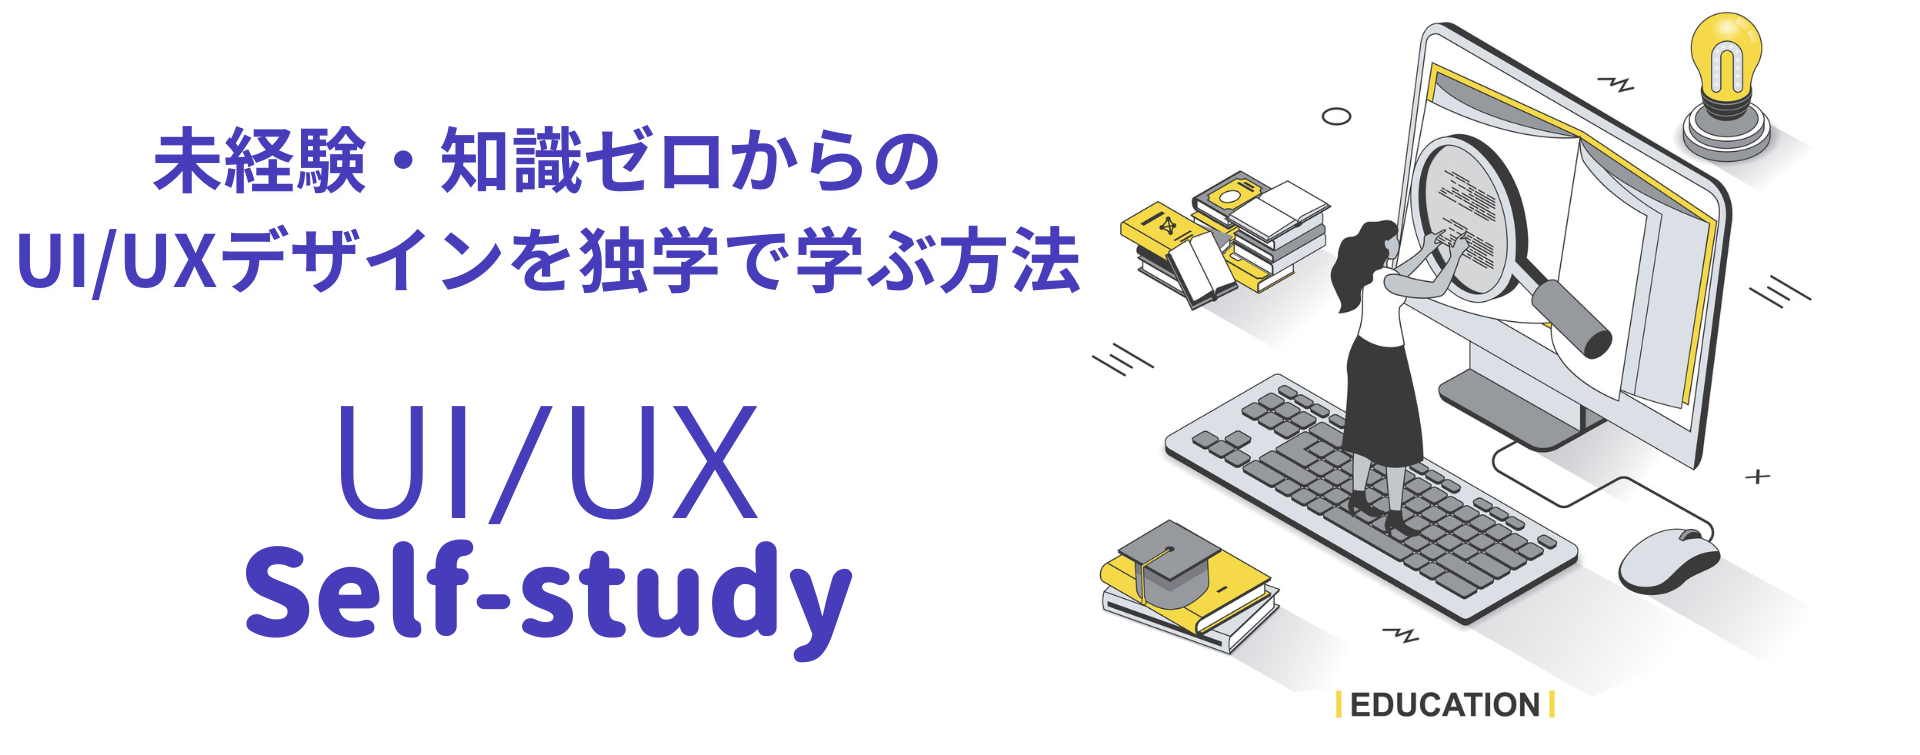 UIUXを独学で勉強する方法